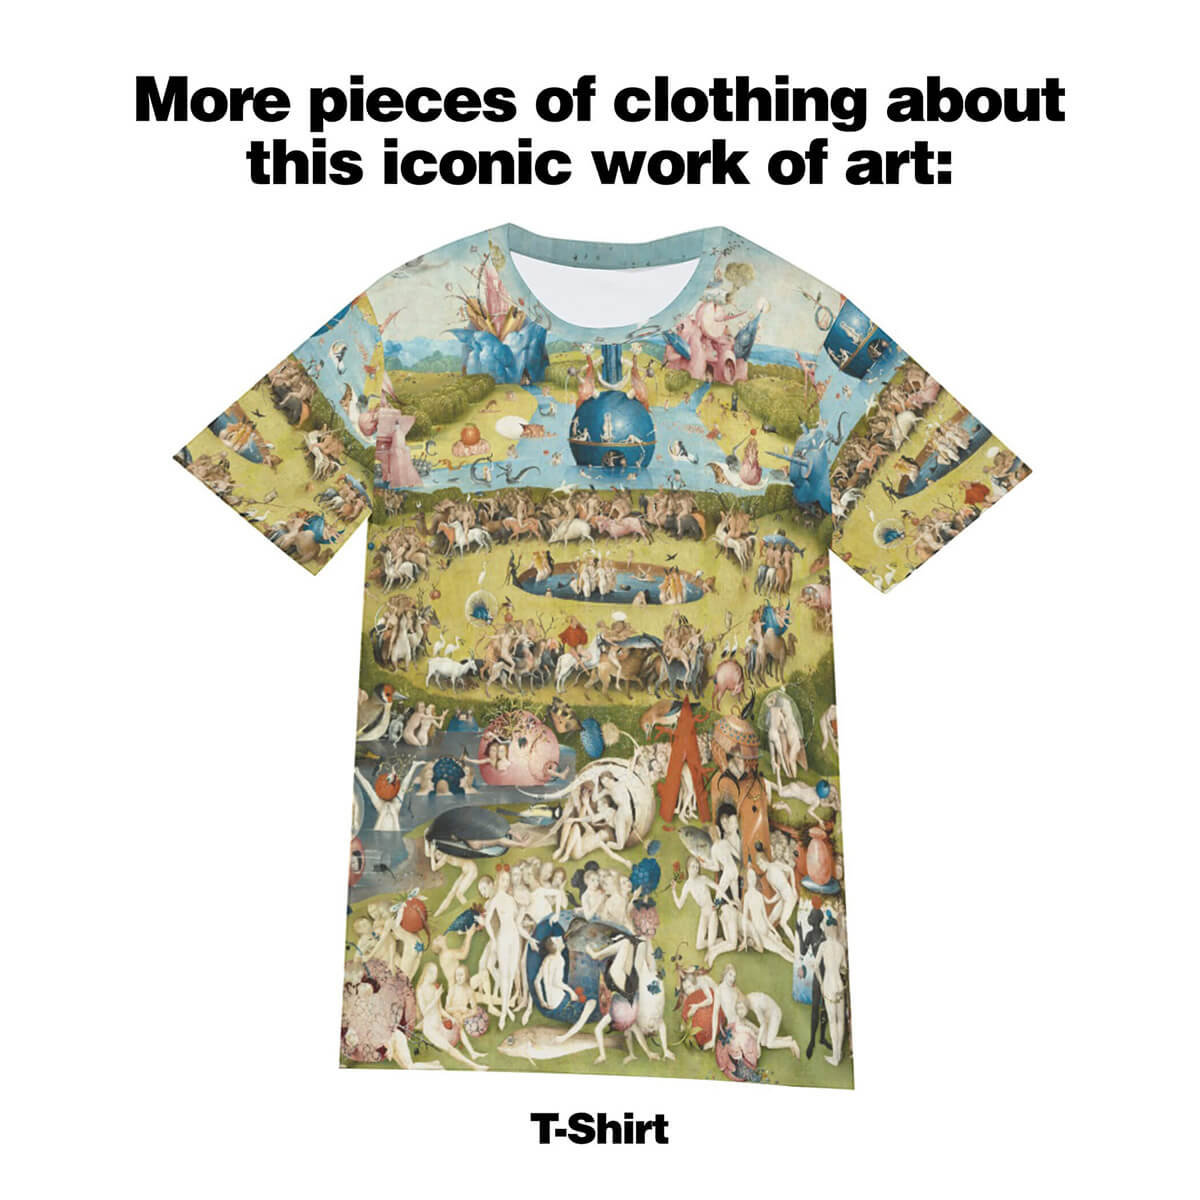 A Földi örömök kertje – Hieronymus Bosch kézitáska